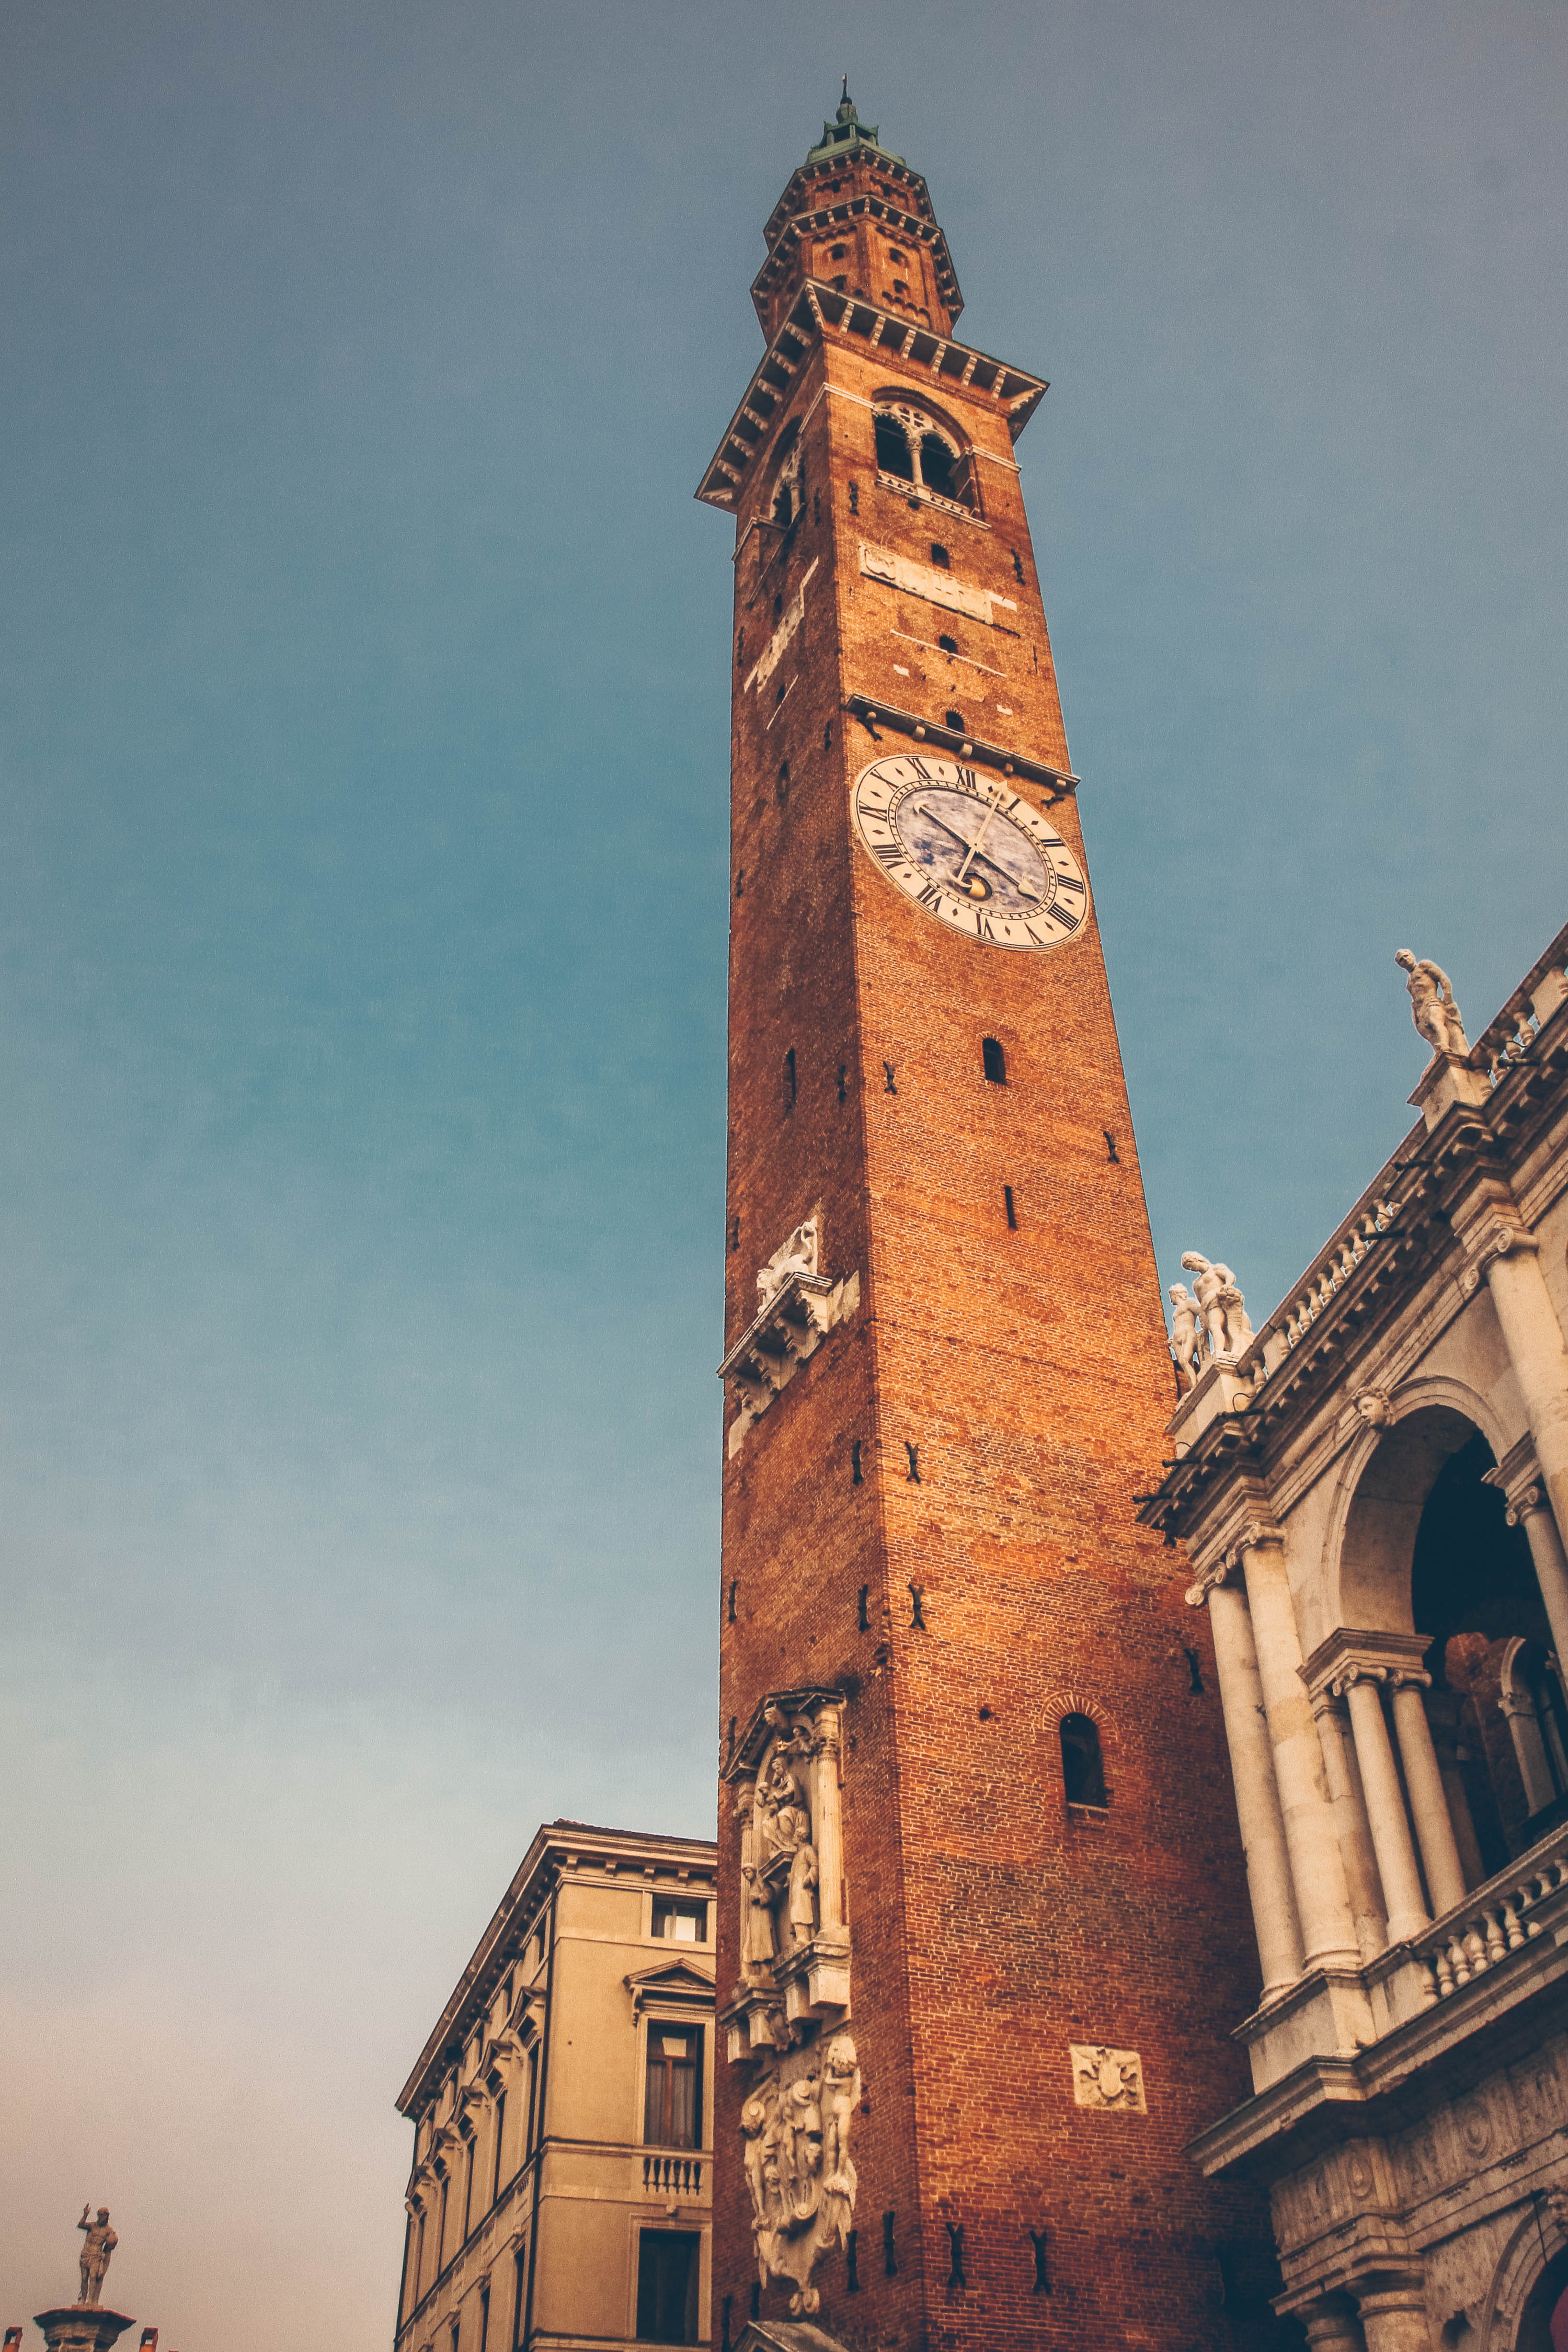 Италия часовой. Башня Торре Биссара. Часовая башня в Италии. Башня Португалия с колокольней. Часовая башня Италия в порту.